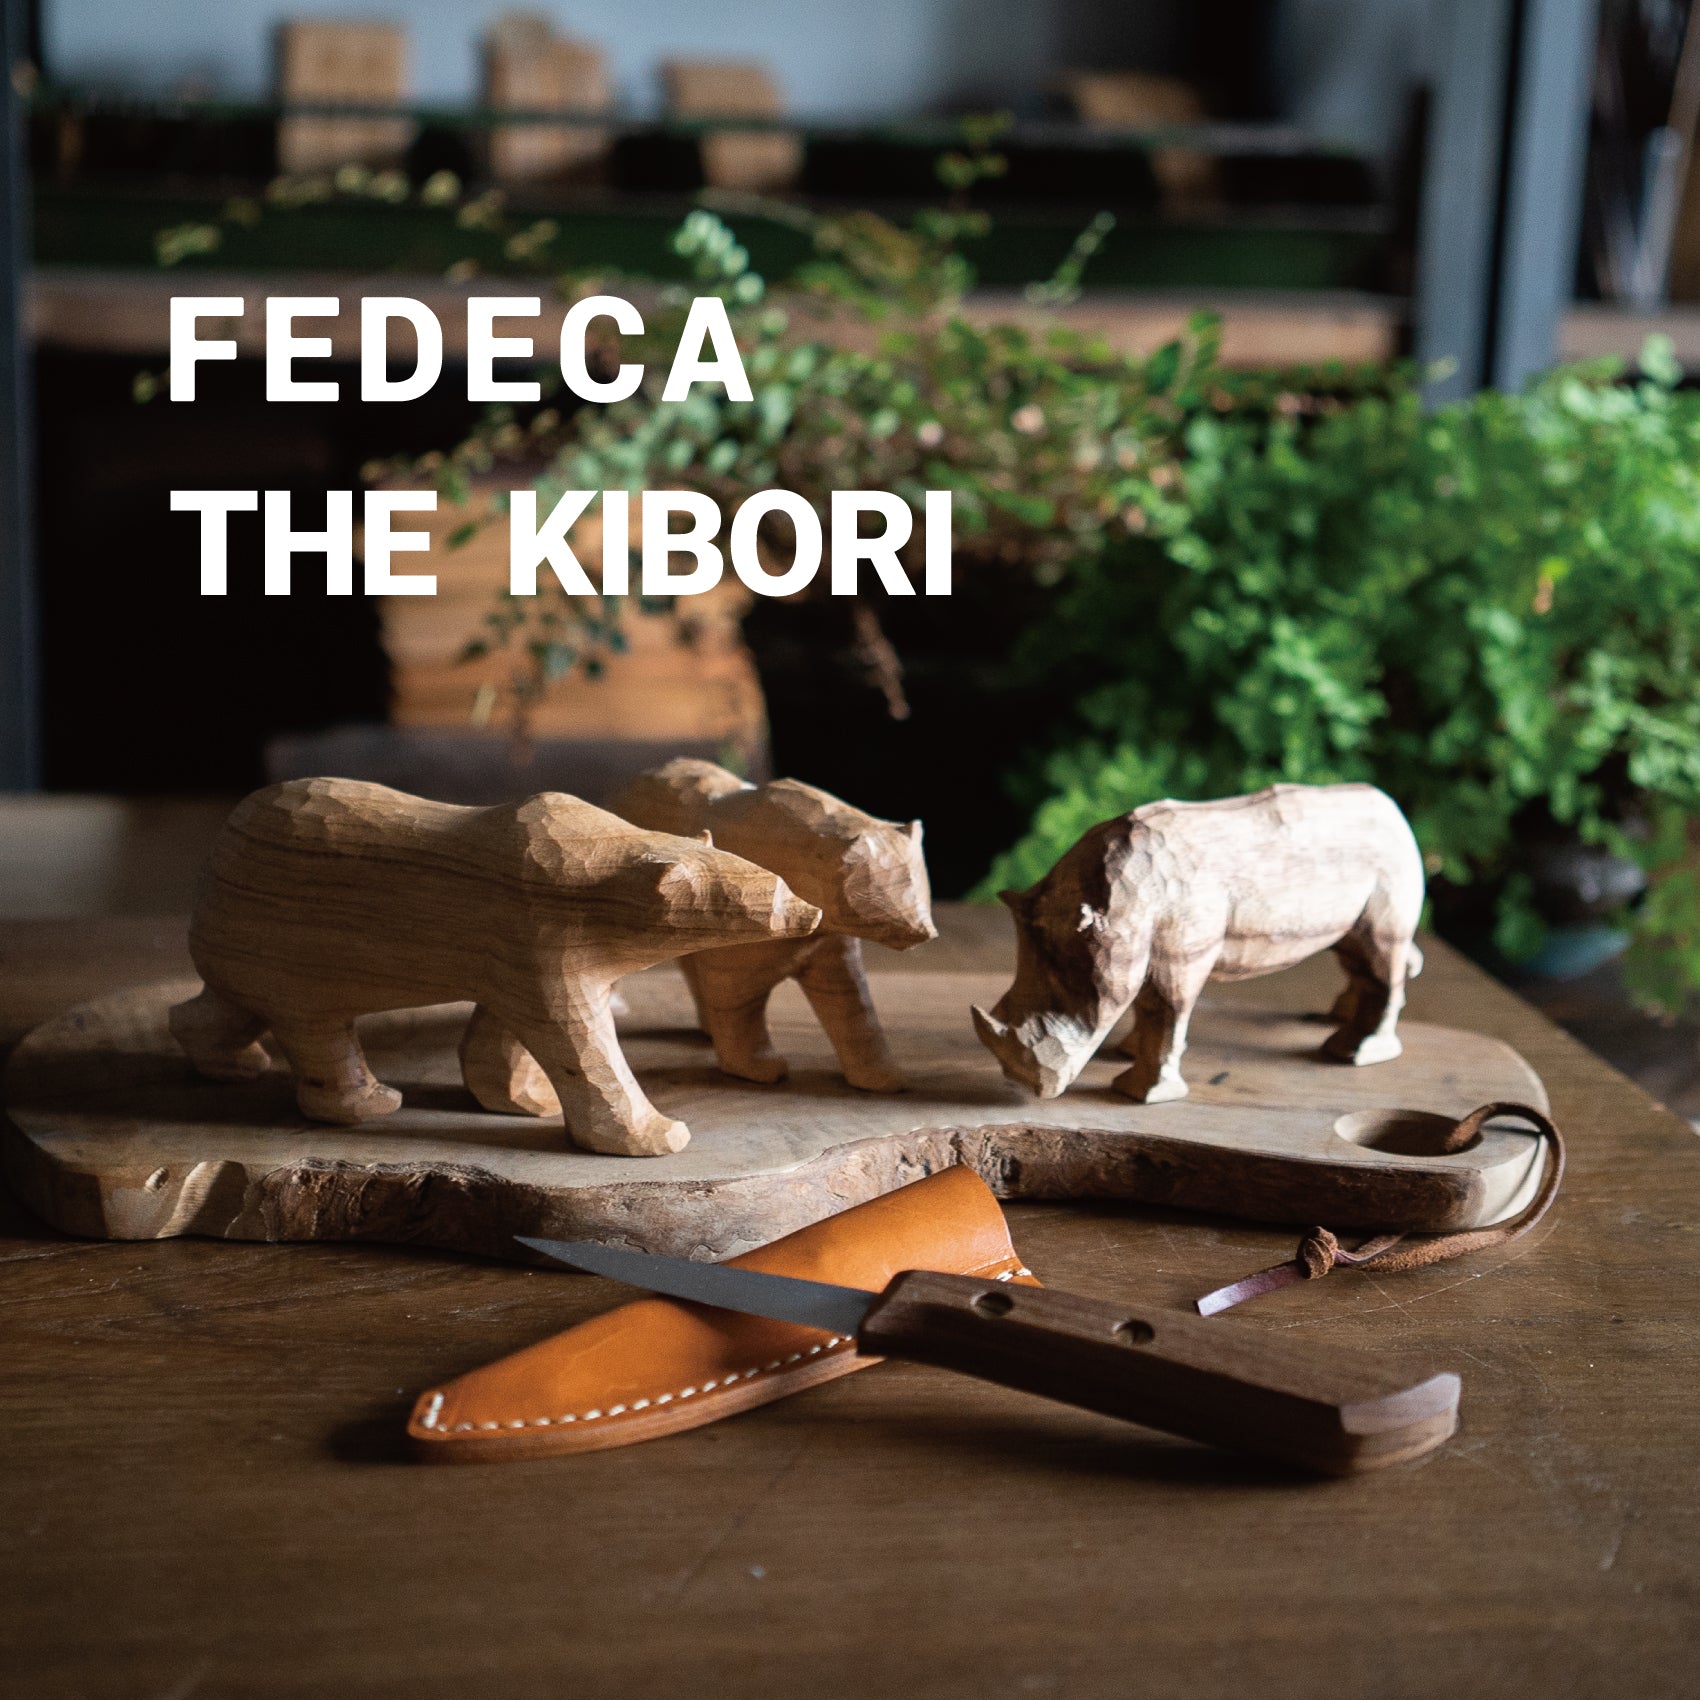 FEDECA THE KIBORI